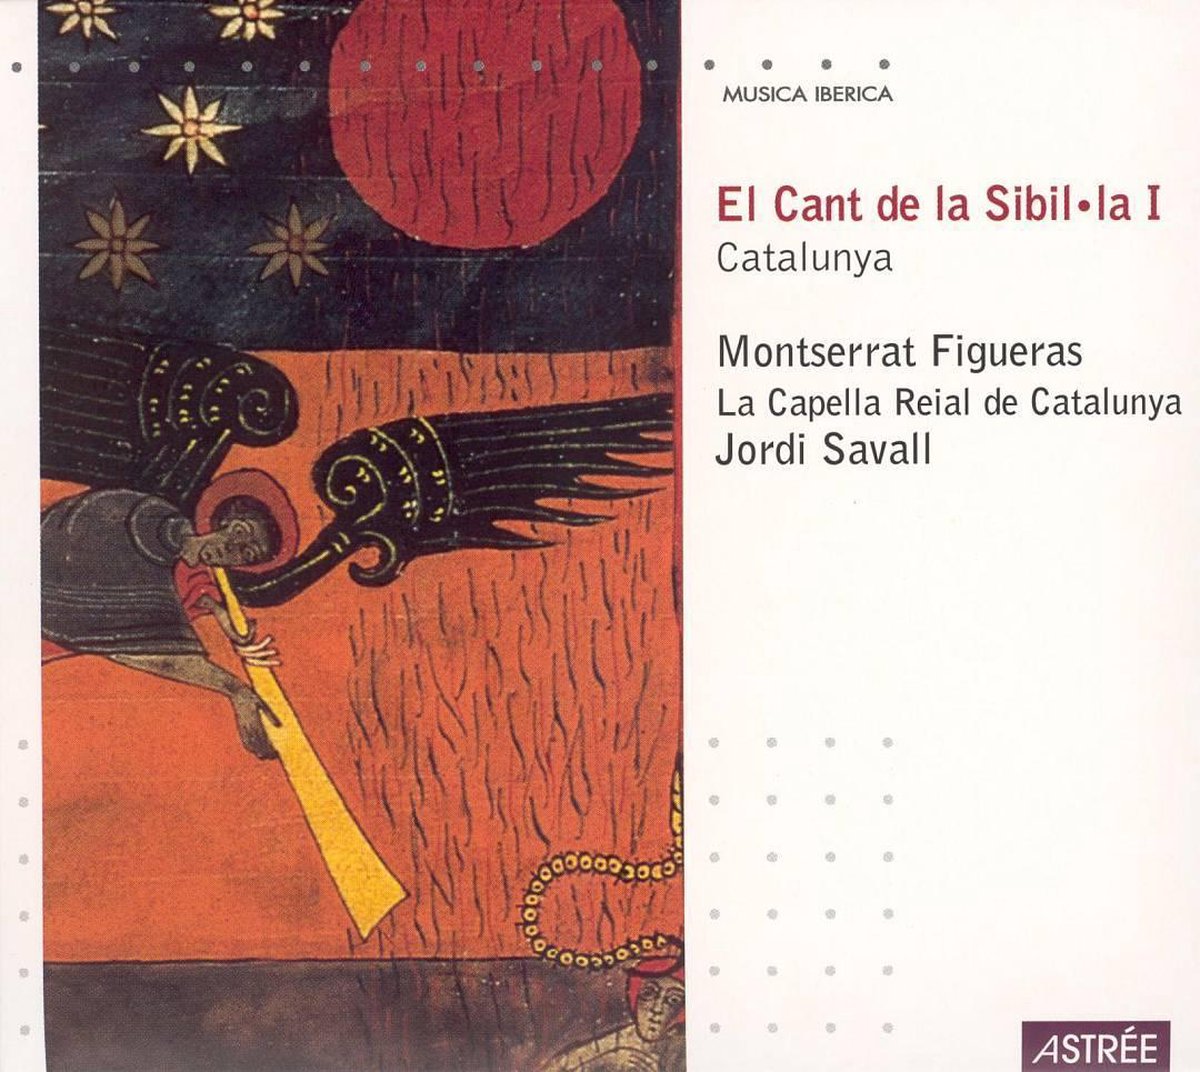 Cant de la Sibil-la - Montserrat Figueras